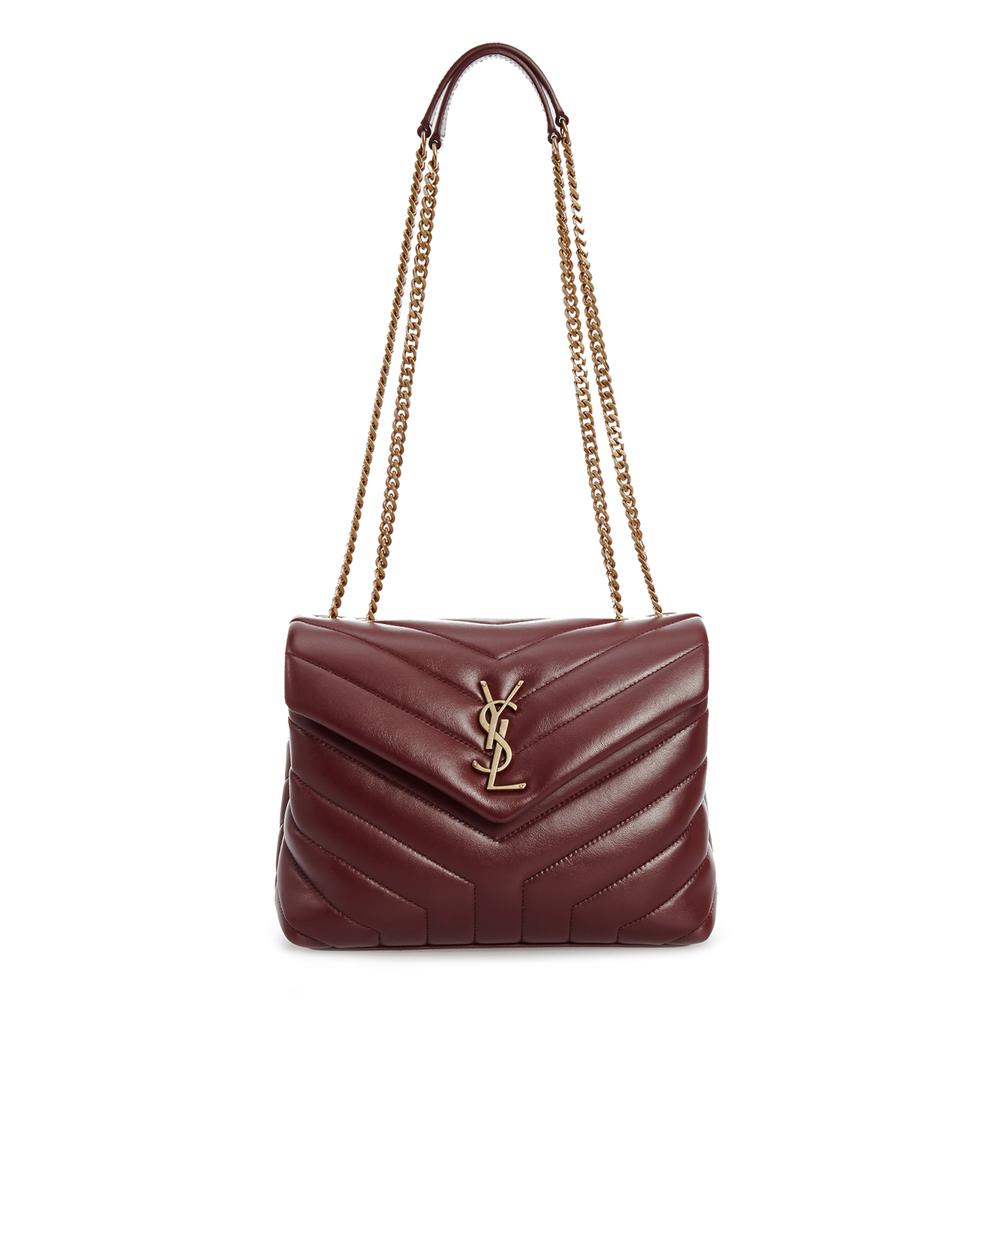 Кожаная сумка Loulou Small Saint Laurent 494699-DV727, бордовый цвет • Купить в интернет-магазине Kameron